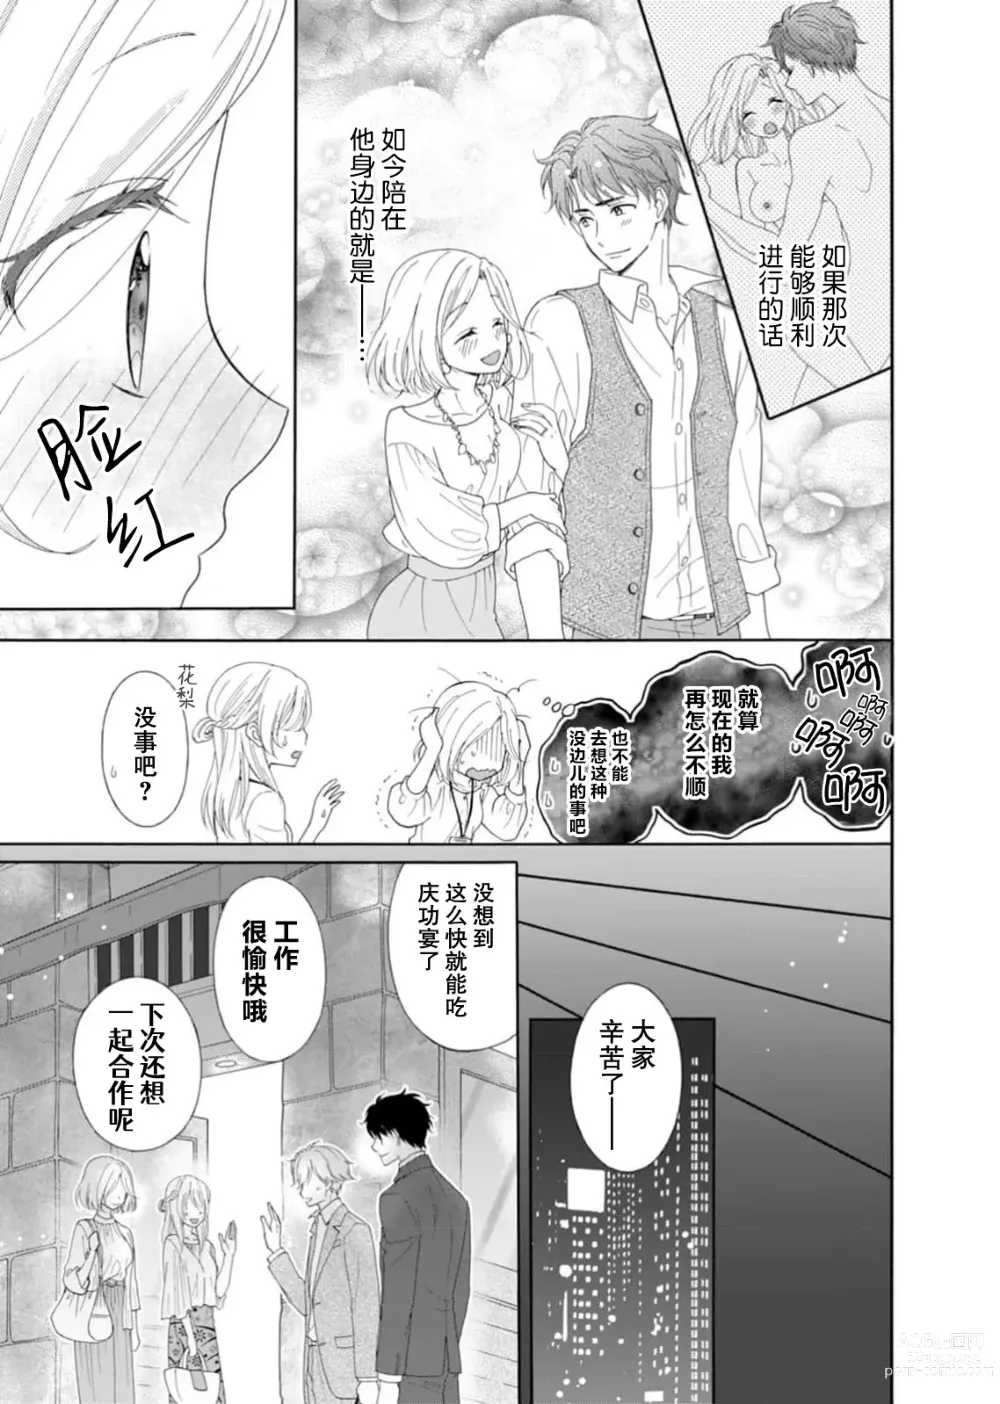 Page 13 of manga 再度初体验！与那时不同。深入灵魂的快感连心都融化…